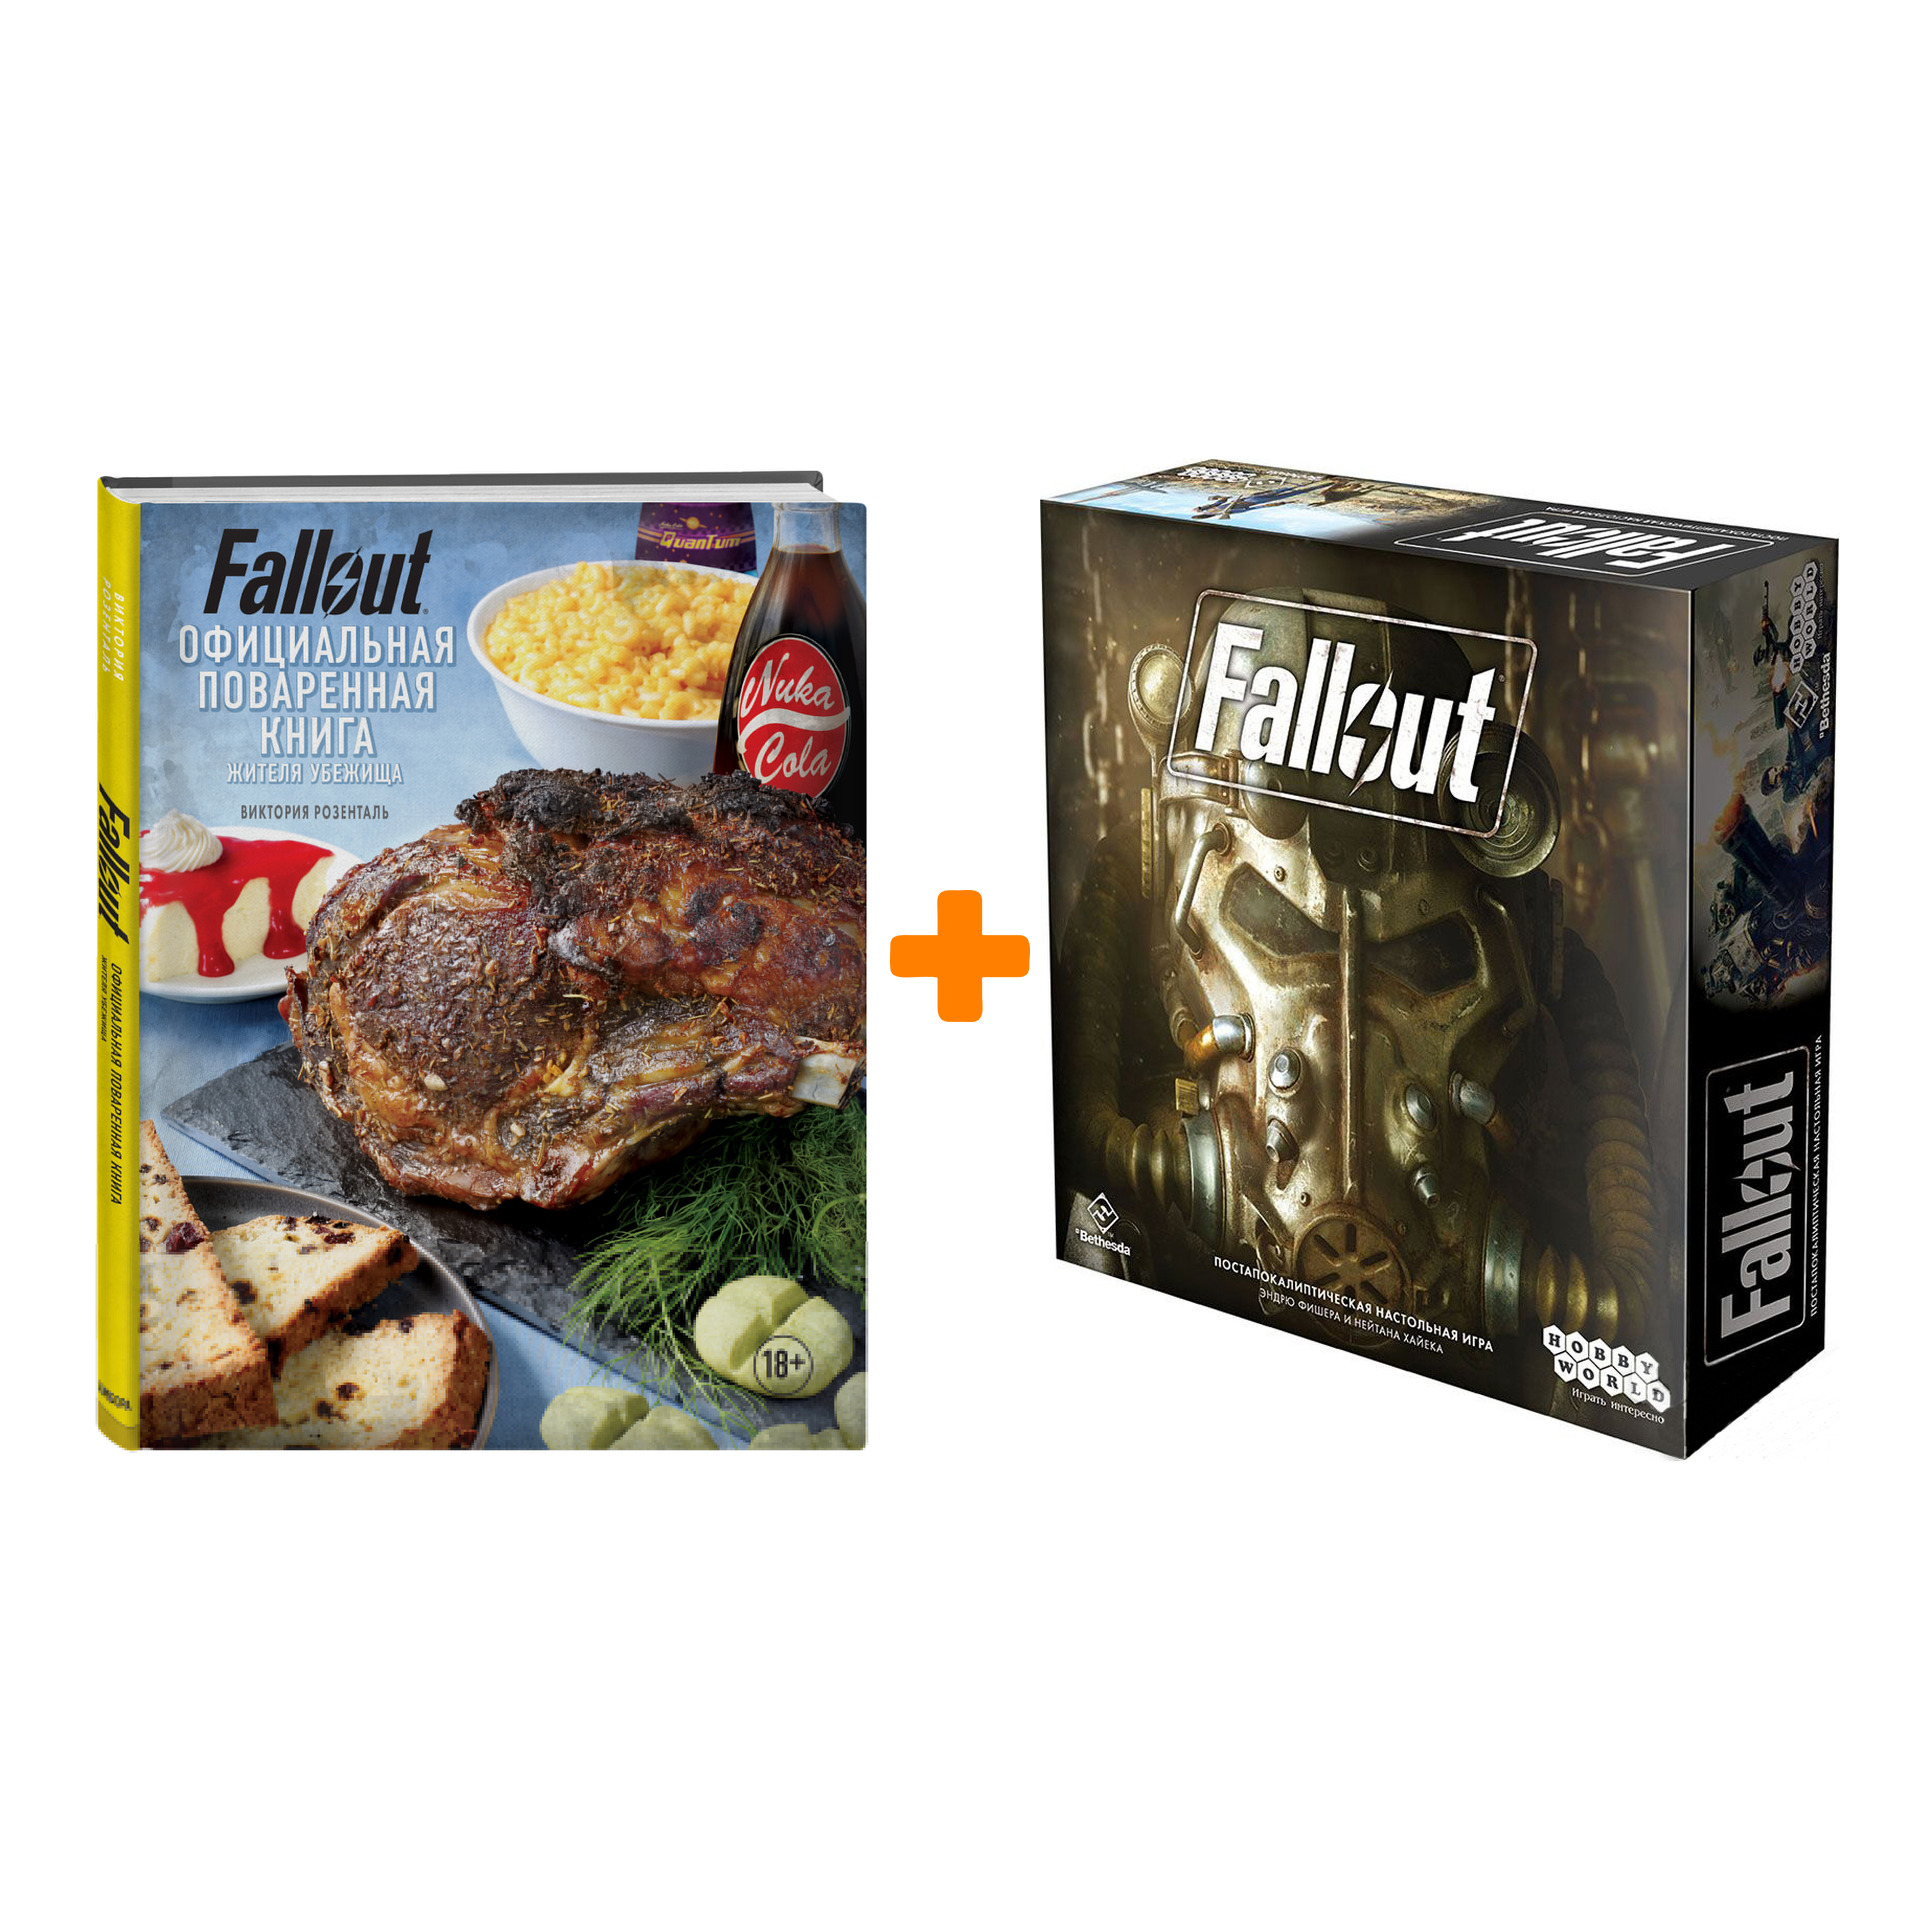 Комплект Fallout: Поваренная книга жителя убежища + Настольная игра Fallout